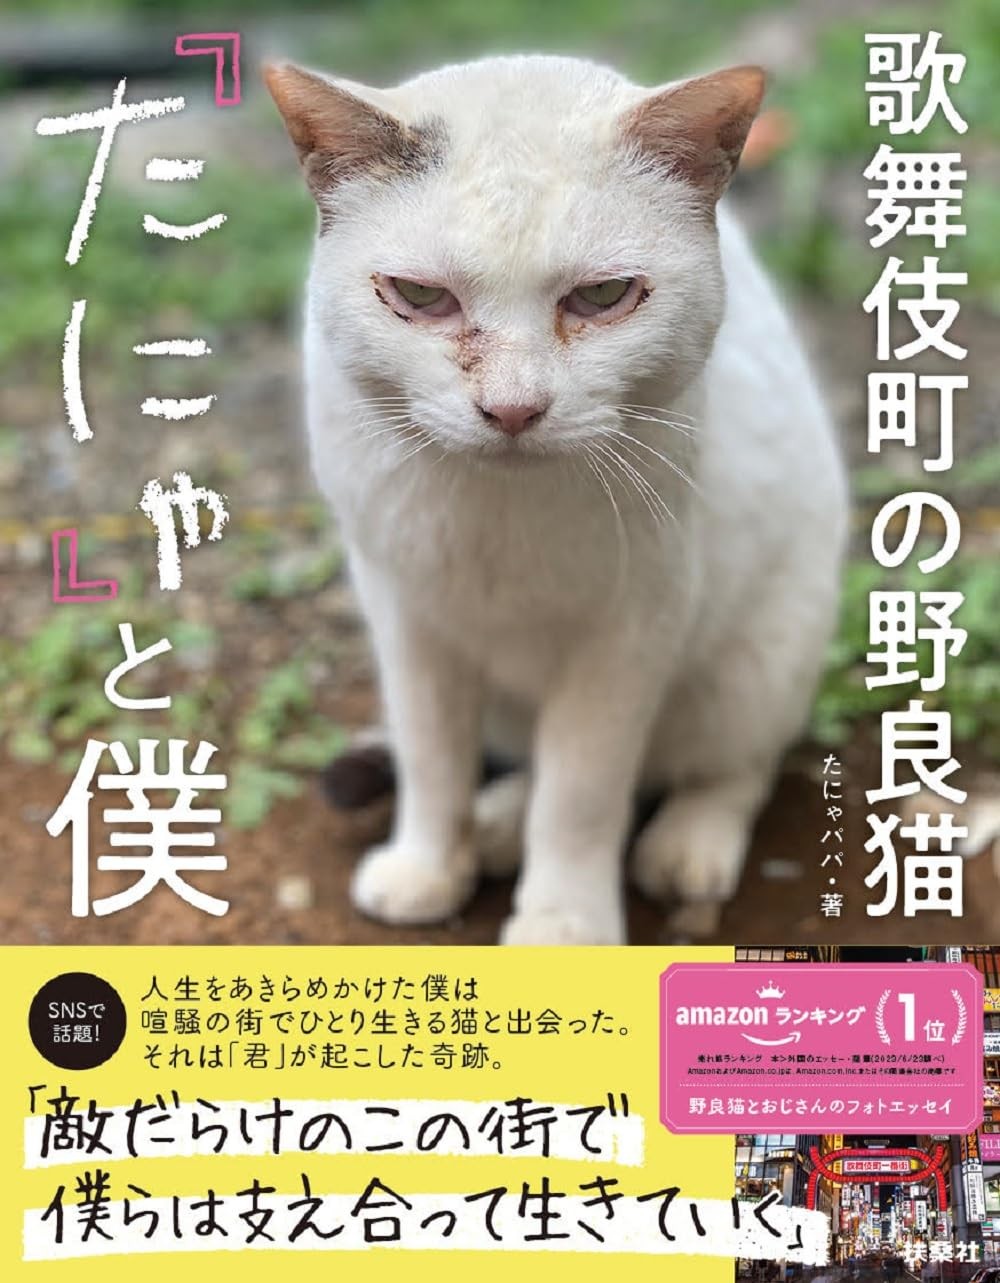 歌舞伎町の野良猫と自殺を考えていた男の出会い。心身ともにボロボロの1人と1匹が家族になる様子を描くフォトエッセイ『歌舞伎町の野良猫「たにゃ」と僕』　ダ・ヴィンチWeb